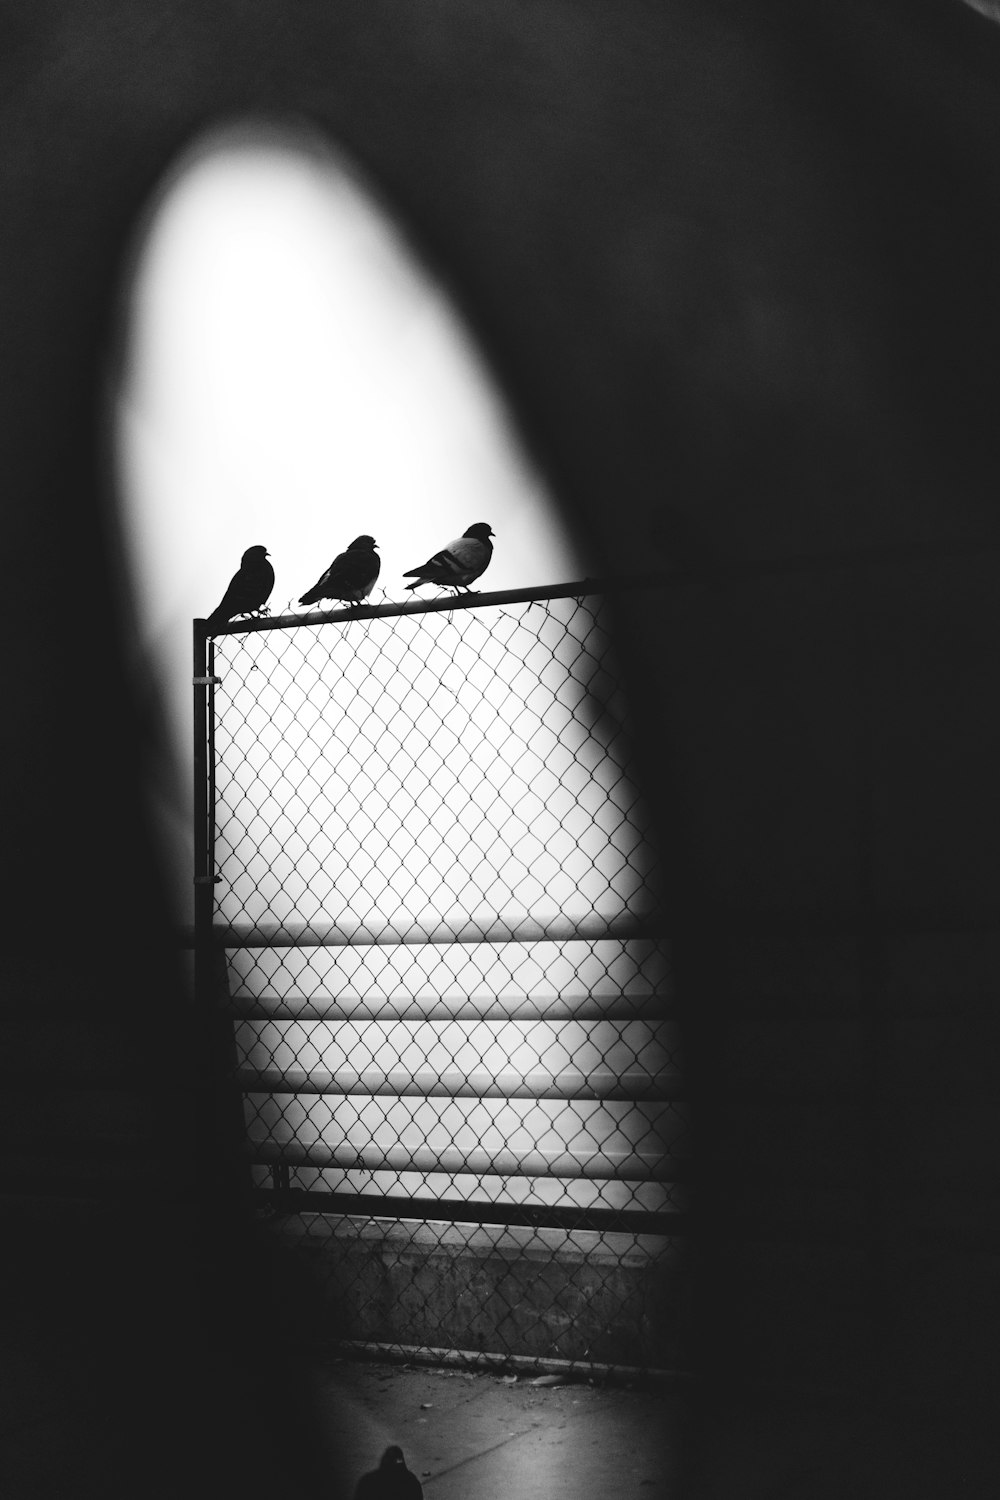 グレースケール写真3羽の鳩